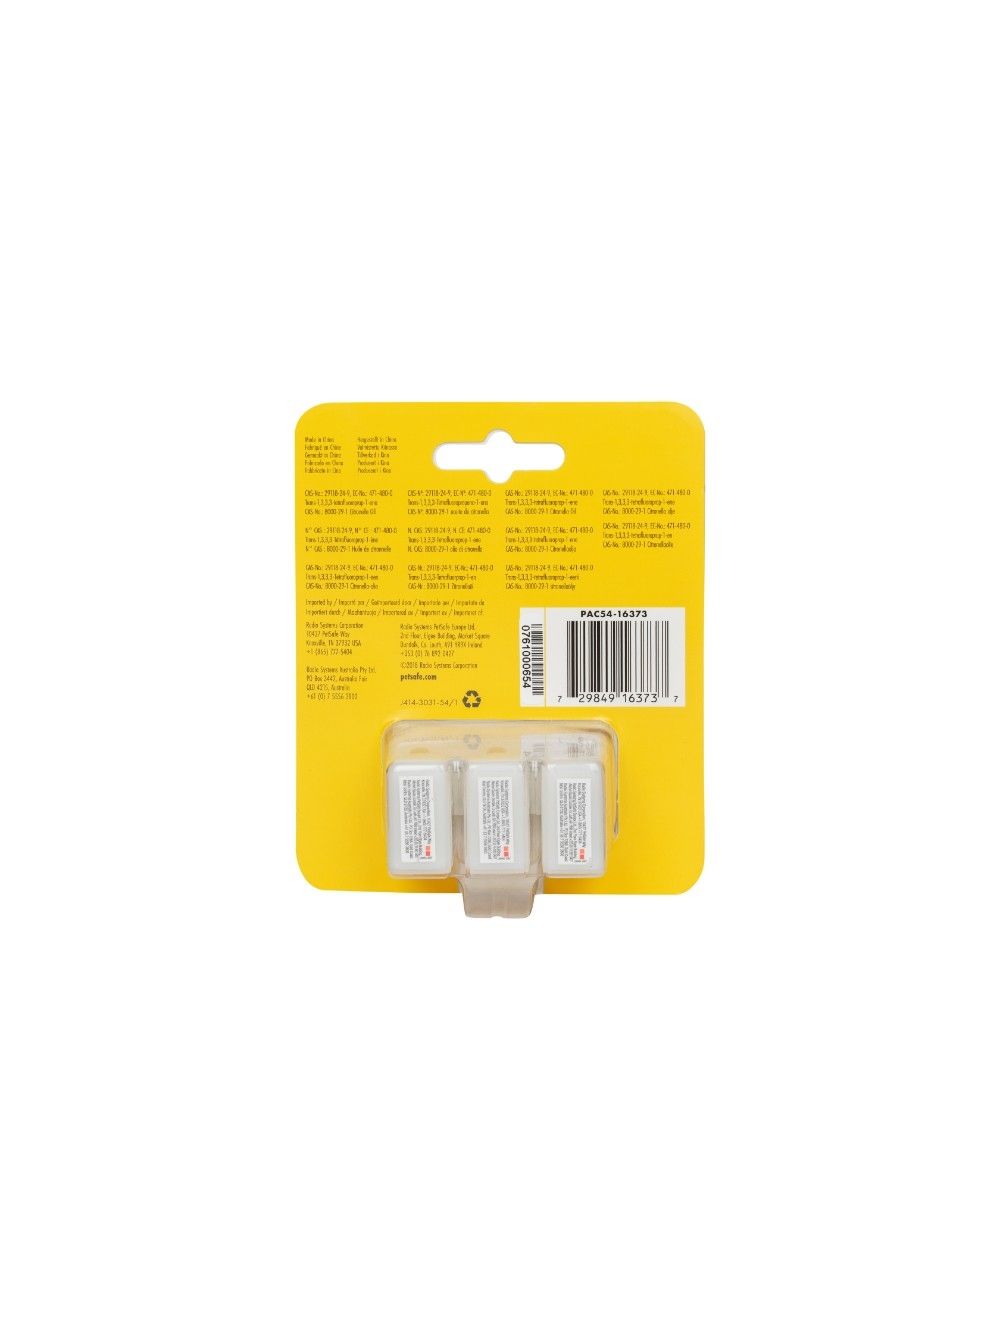 Petsafe - Refill cartridges Citronella 3pack - (72984916373) - Kjæledyr og utstyr